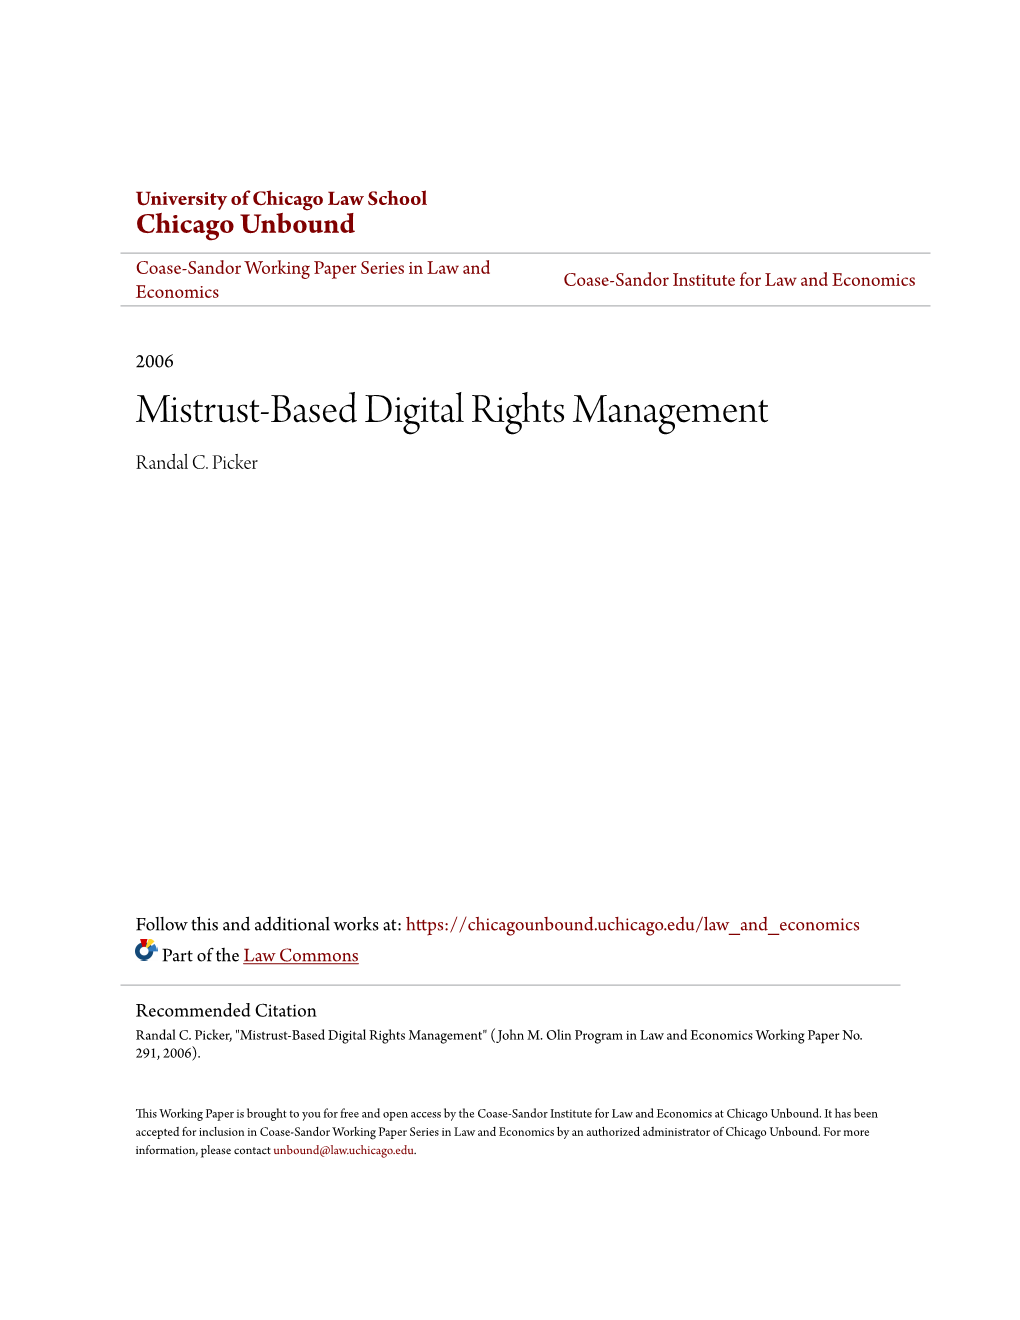 Mistrust-Based Digital Rights Management Randal C